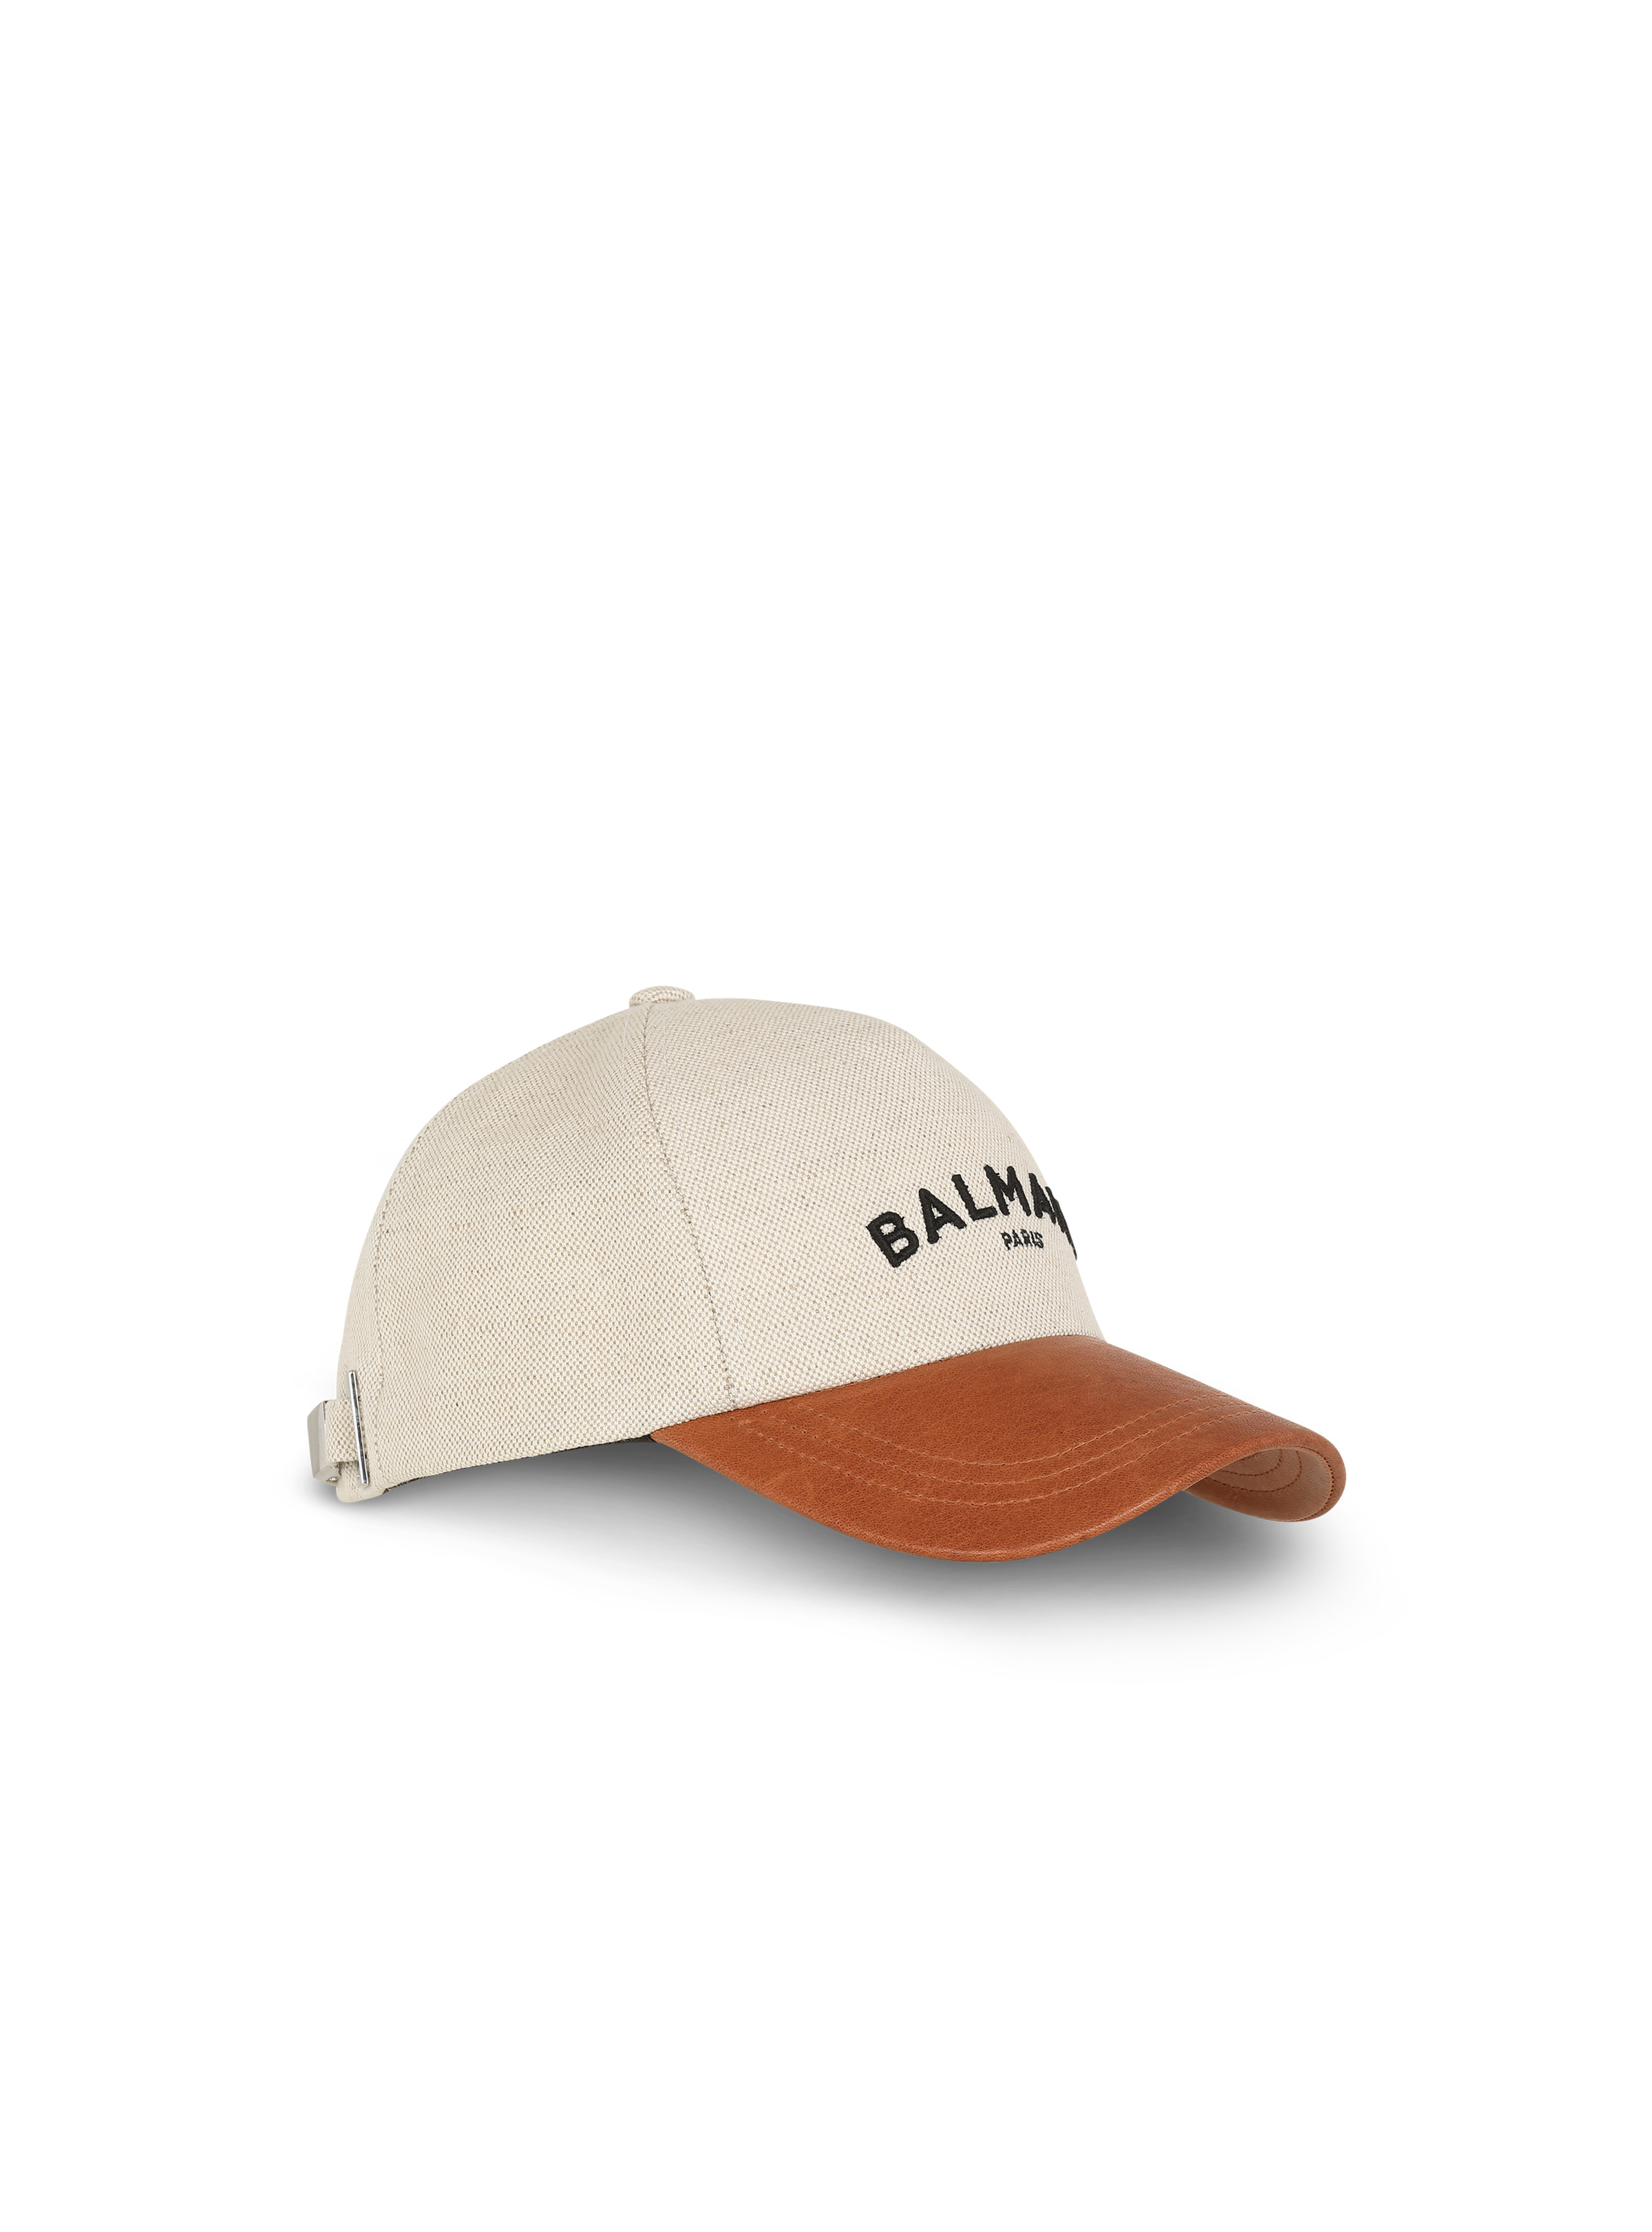 Cotton cap with Balmain logo - 3